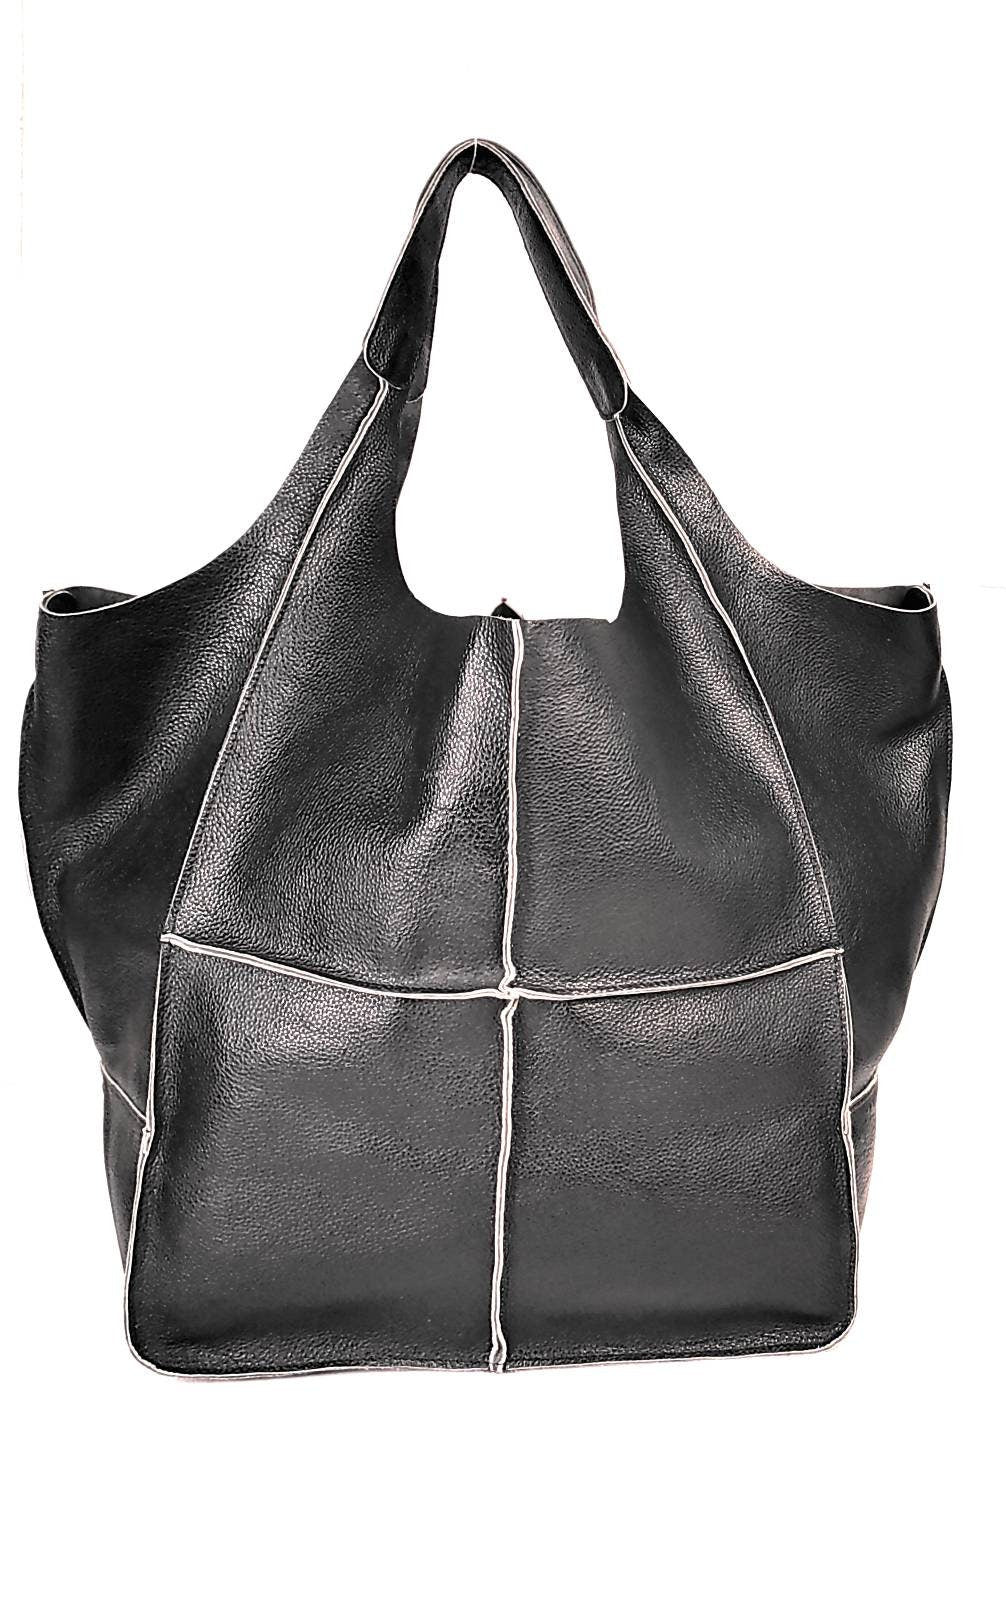 Guess Lock Handbag Purse Gray & Black | eBay